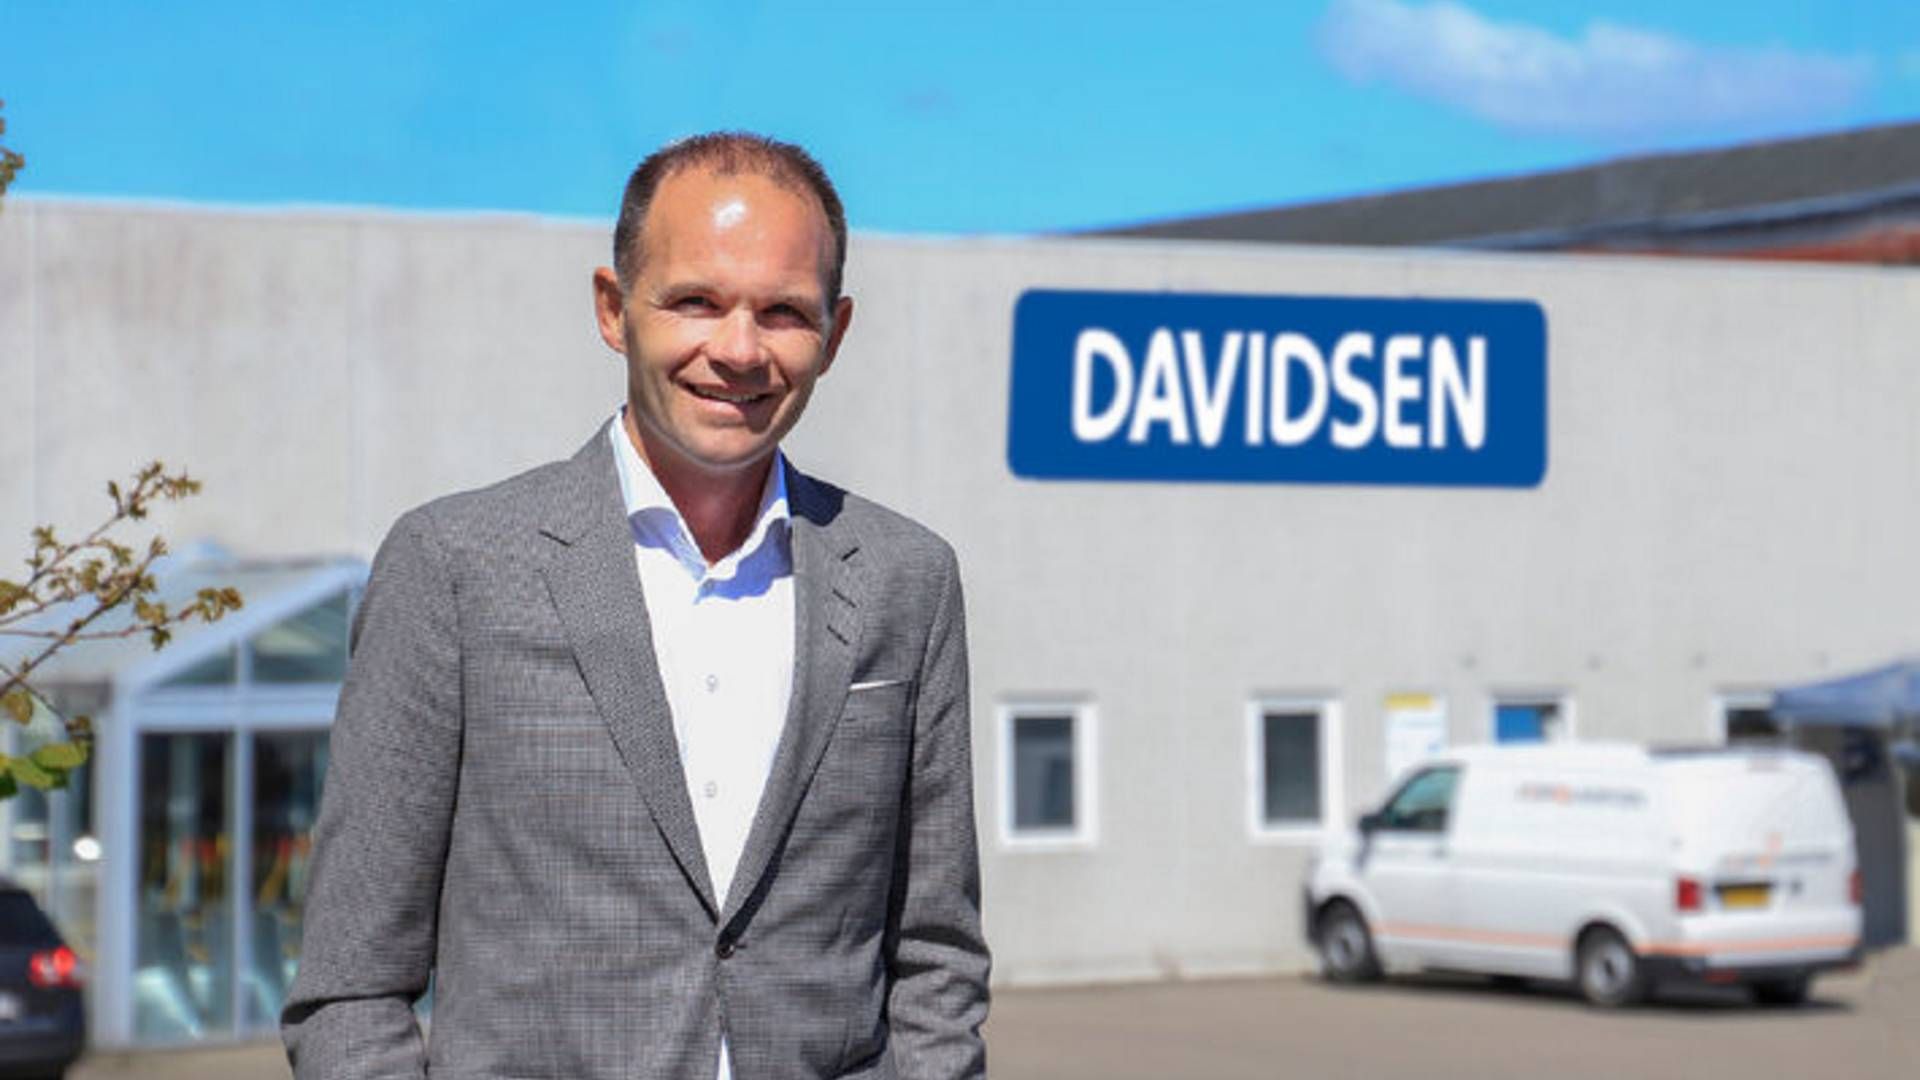 Henrik Clausen har været direktør siden 2017, hvor han afløste Povl Davidsen, søn af stifter Christian Davidsen. | Foto: Davidsen/Pr